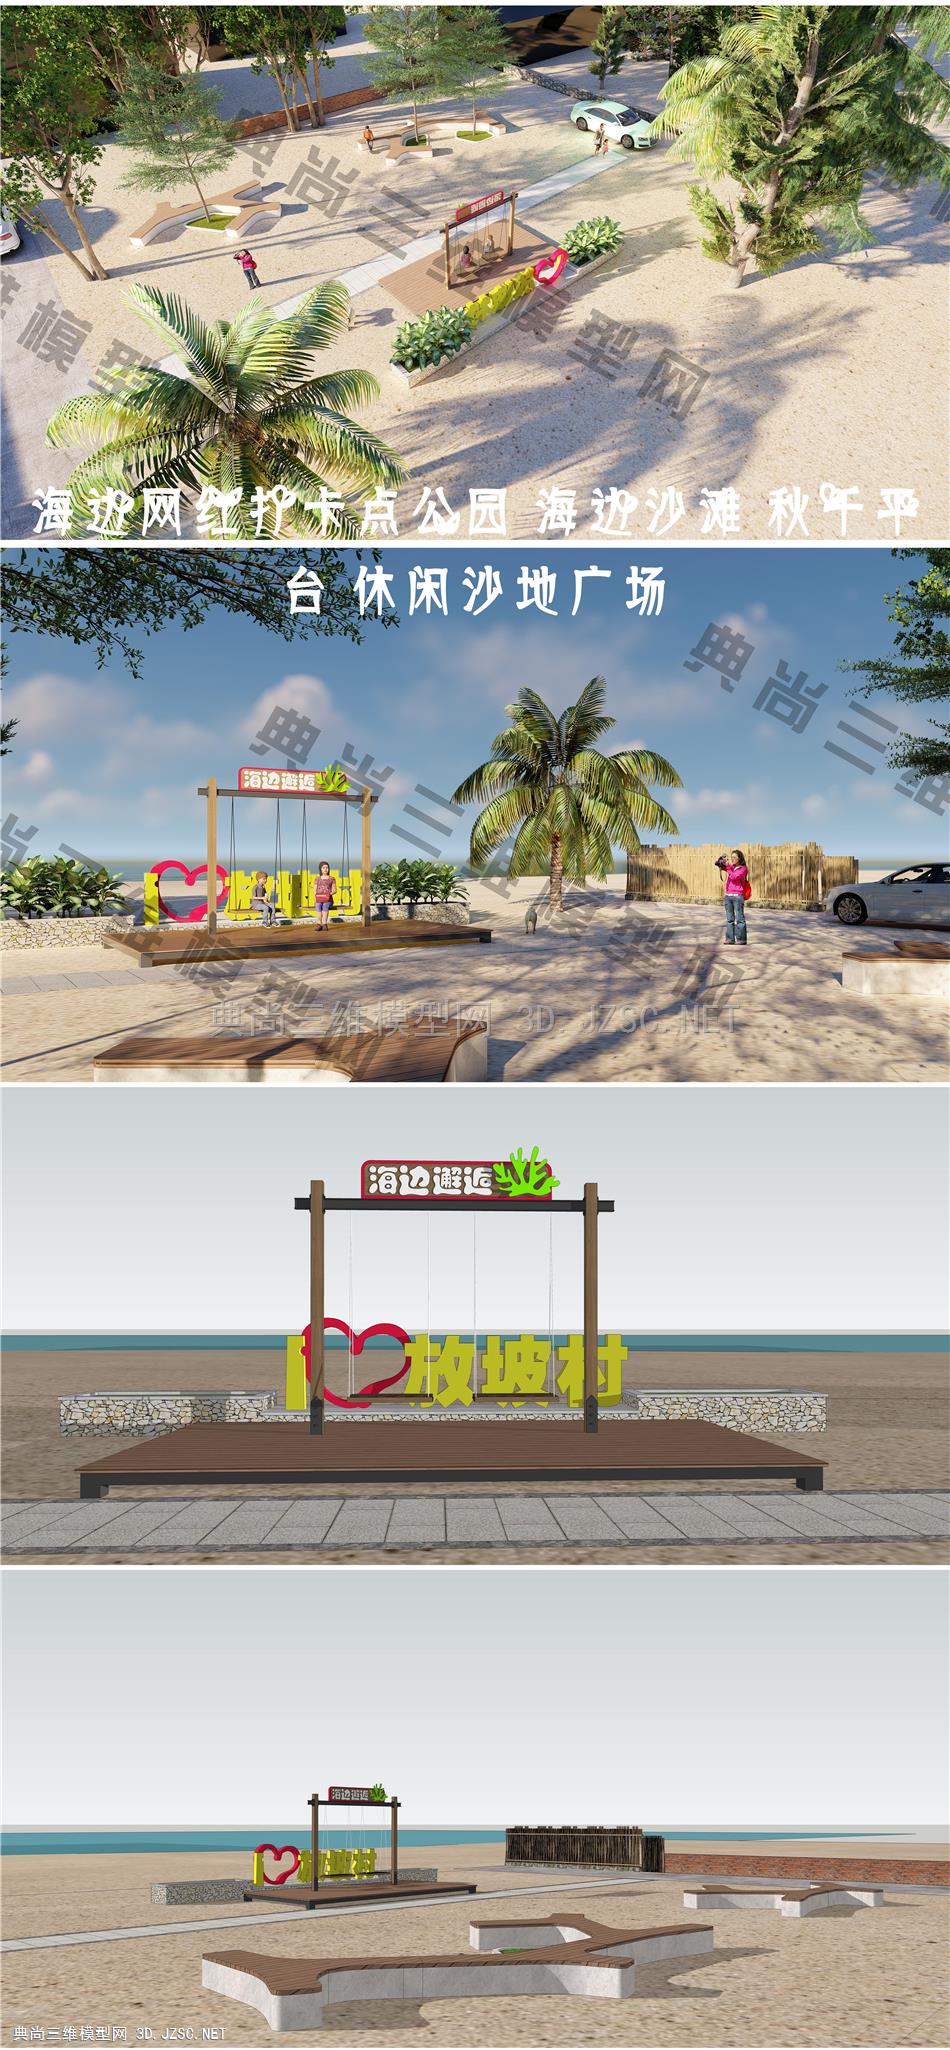 海边网红打卡点公园 海边沙滩 秋千平台 休闲沙地广场